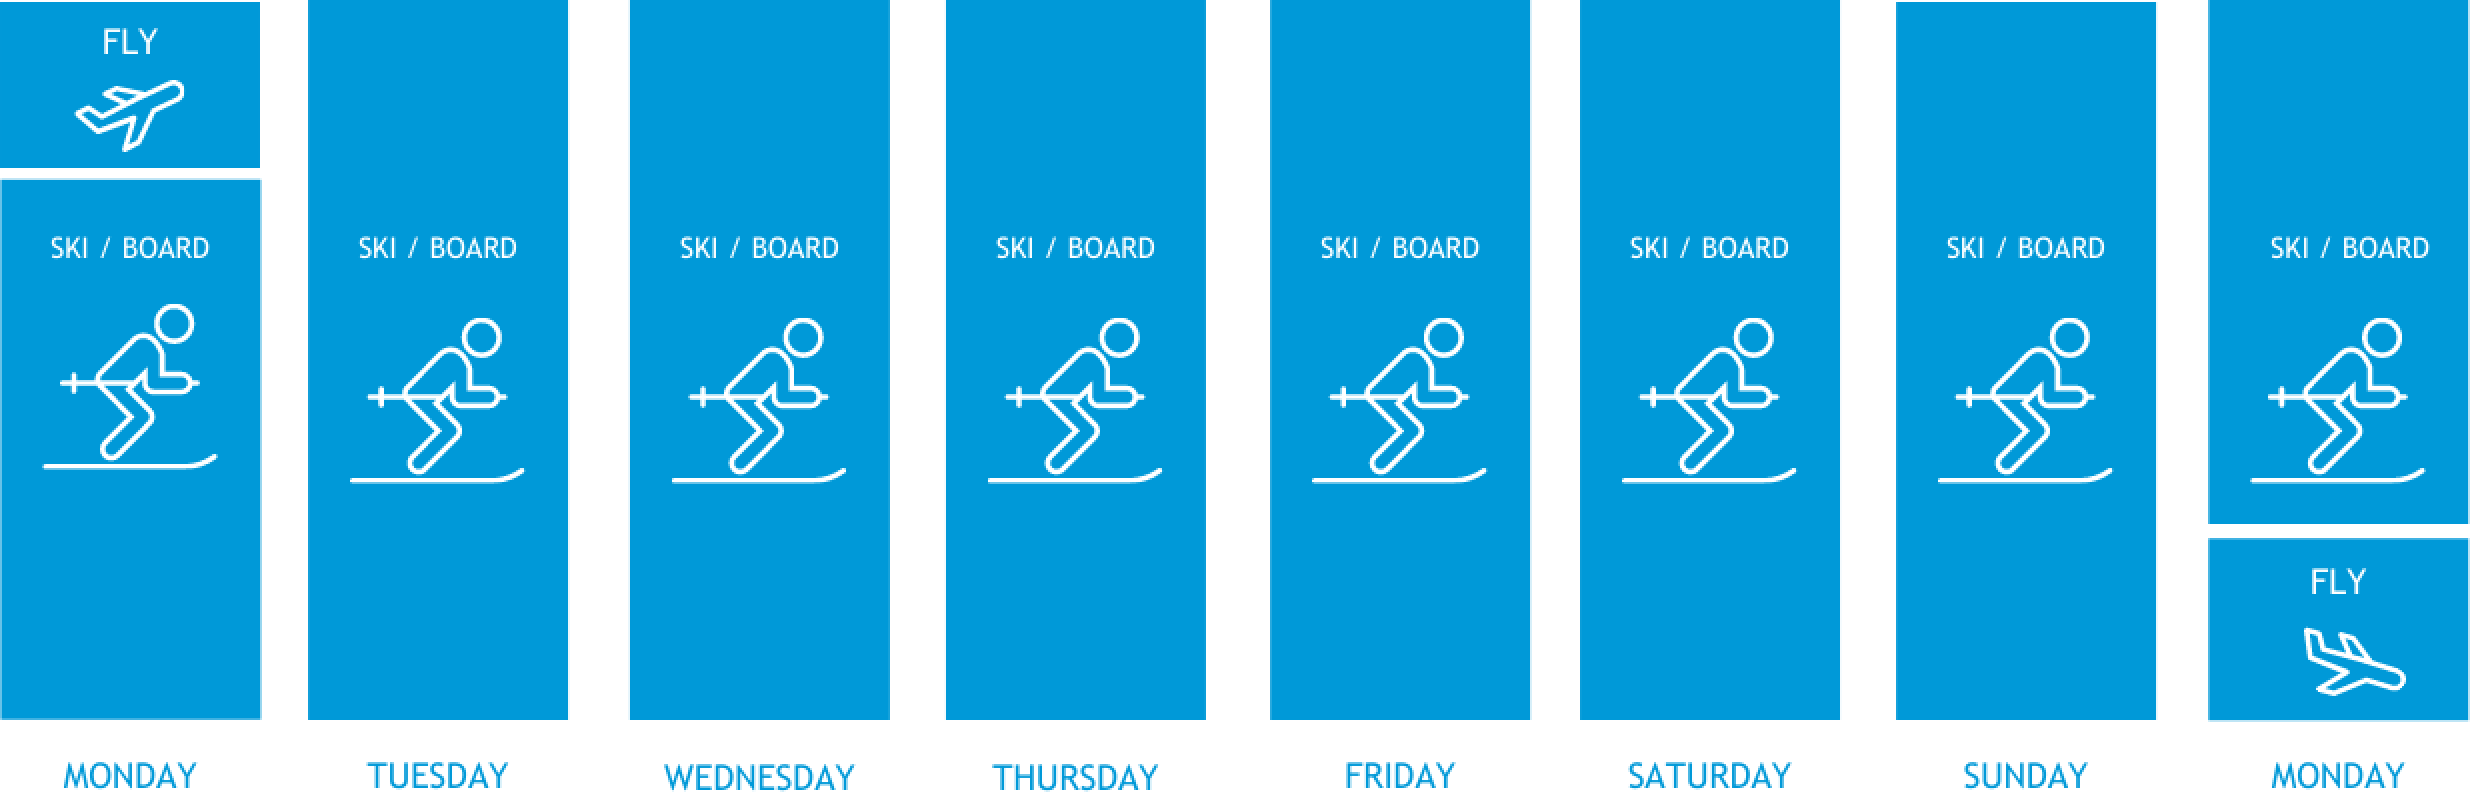 Week Long Ski Holiday Itinerary